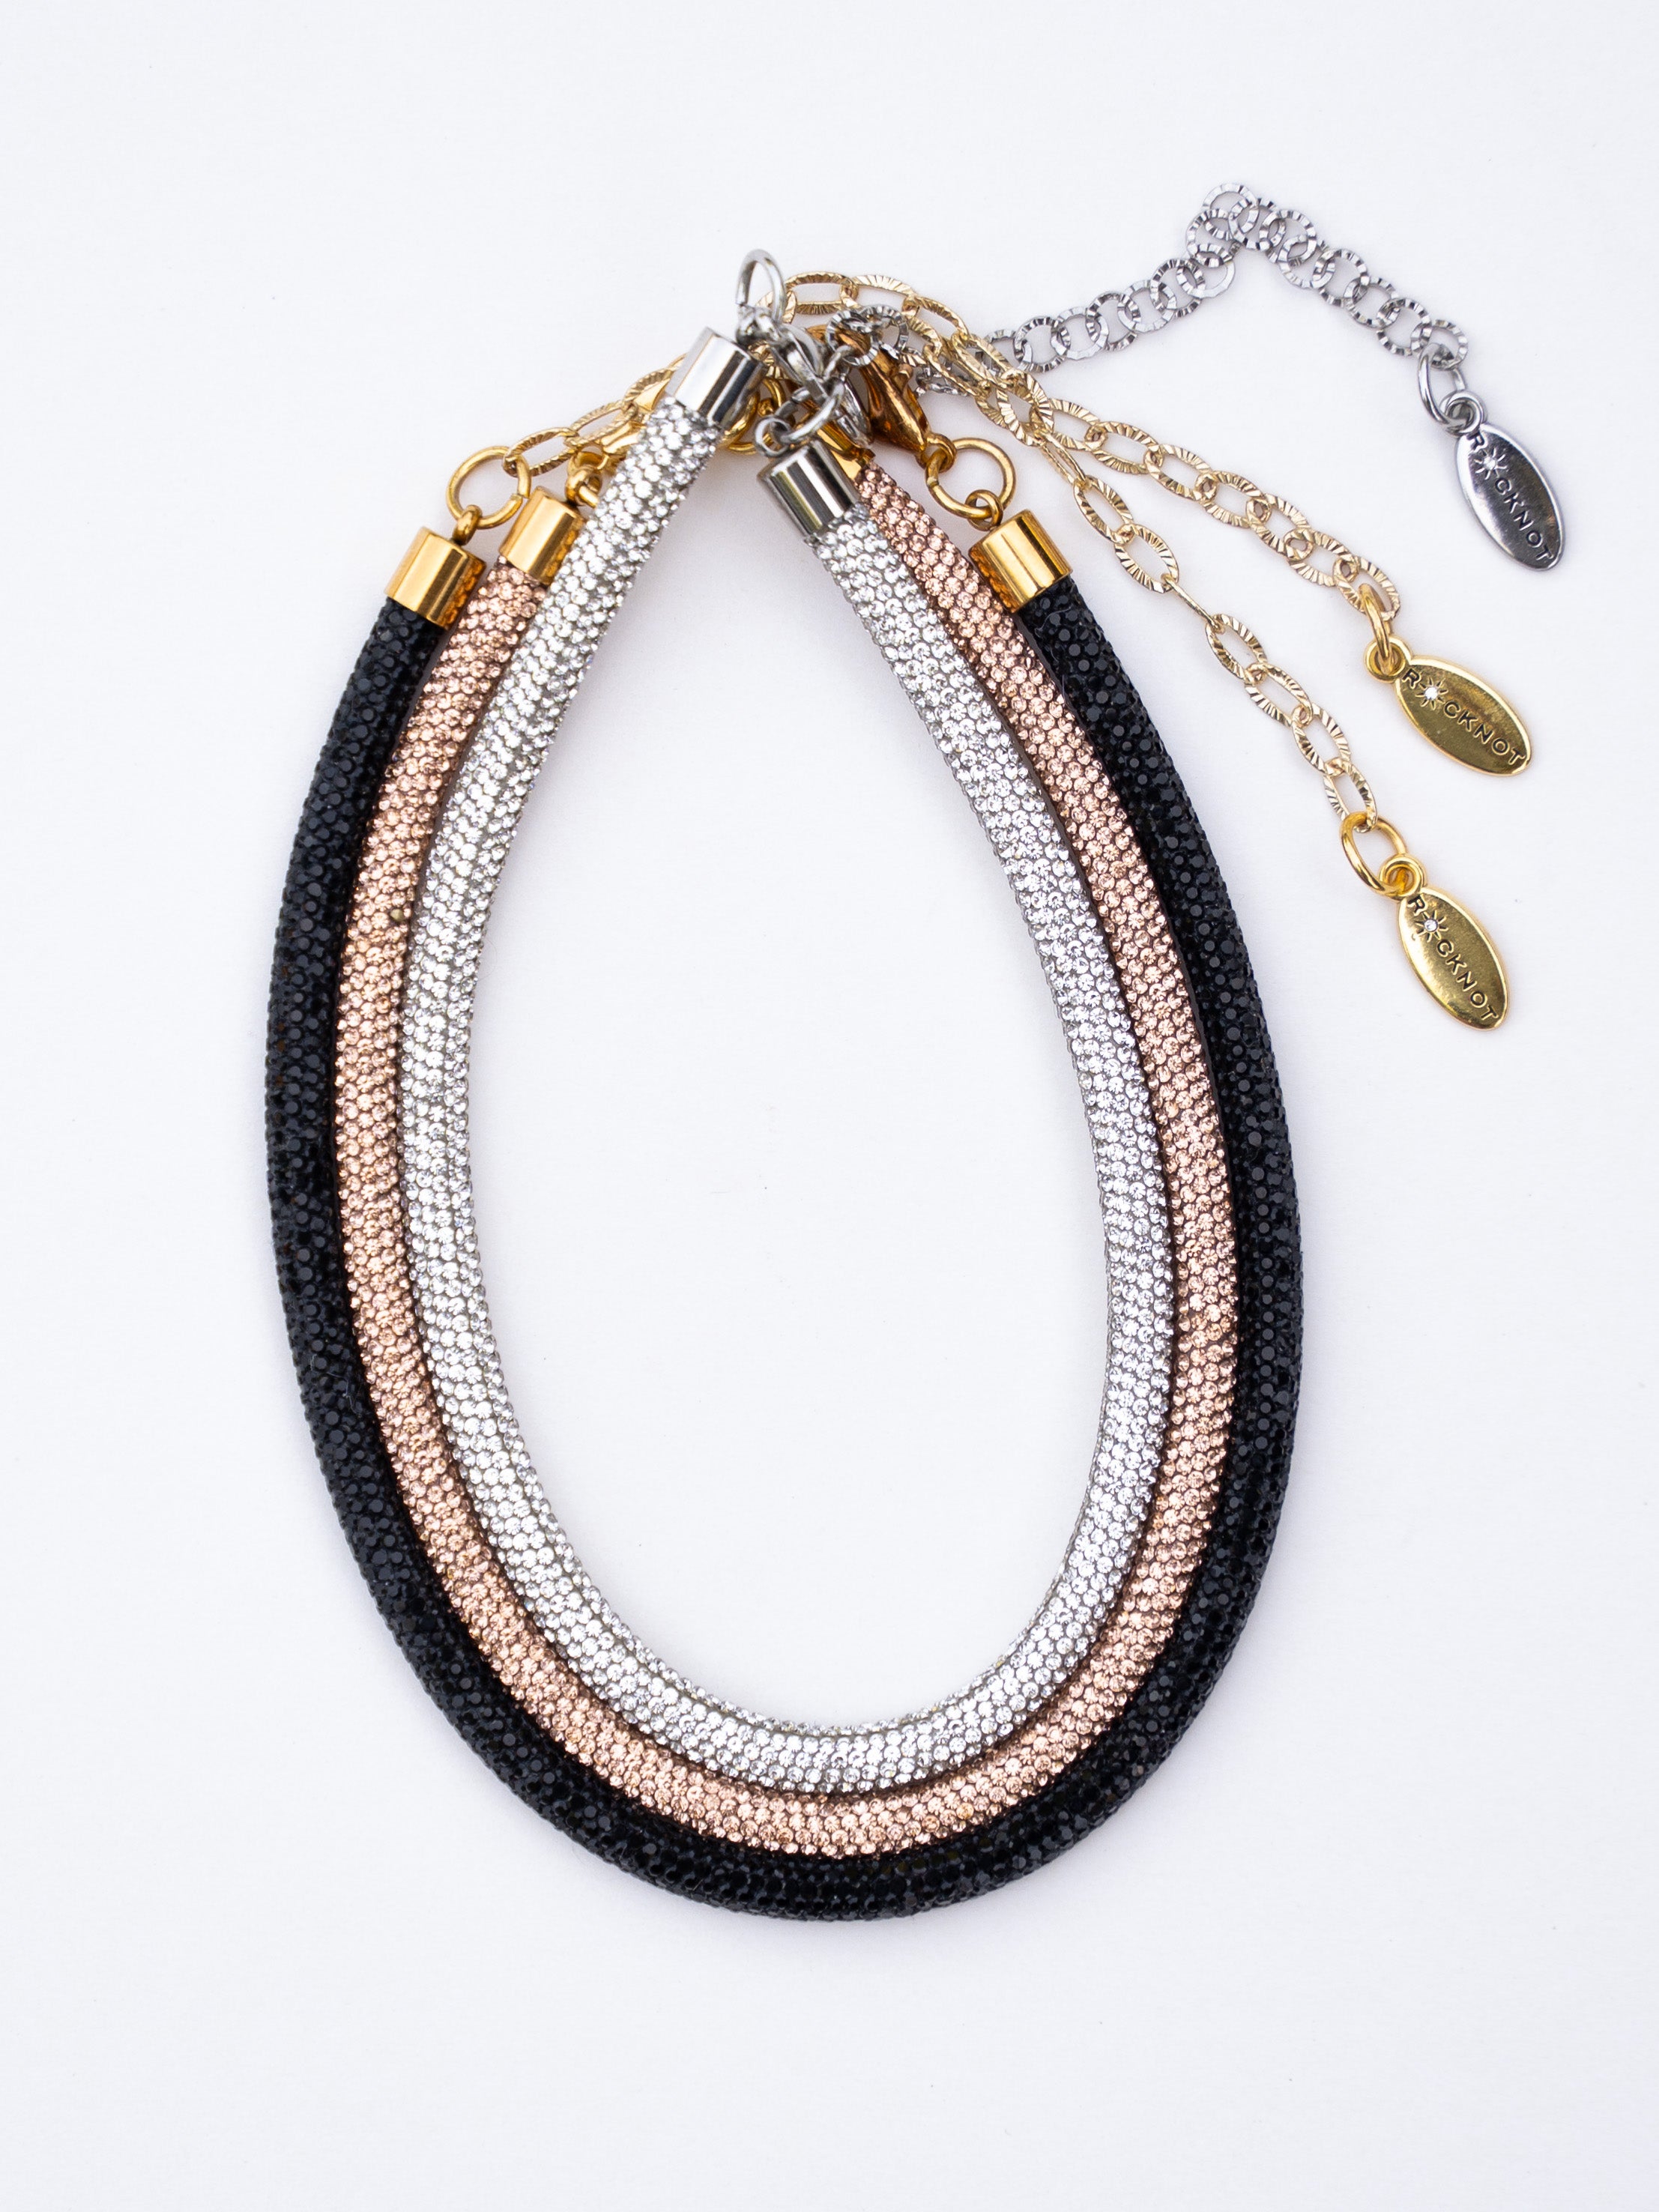 Rhinestone Rope Necklace - 3x Bundle